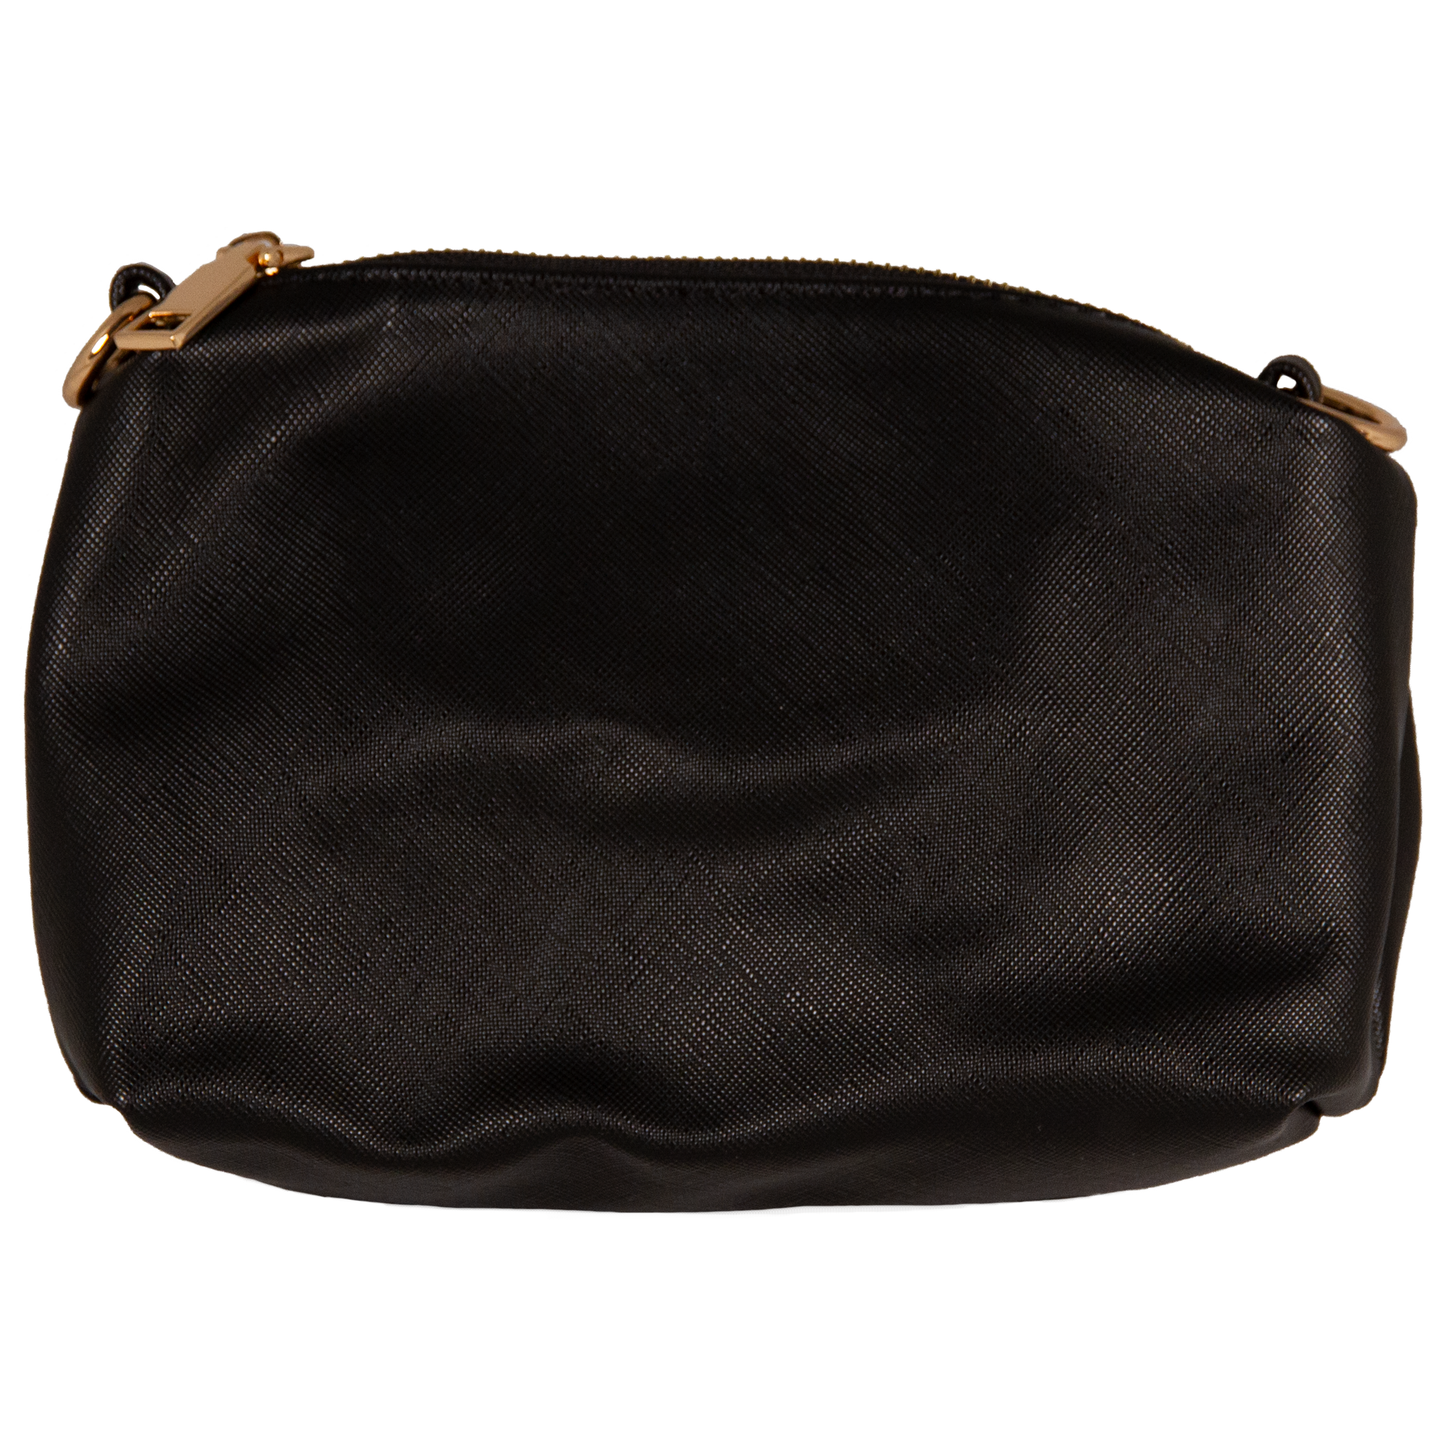 UNTRUE Women’s Haute Couture Gold Chain Drawstring Pouch Design Top-Handle Shoulder Bag Handbag Vegan Leather (ONMZ) - Black